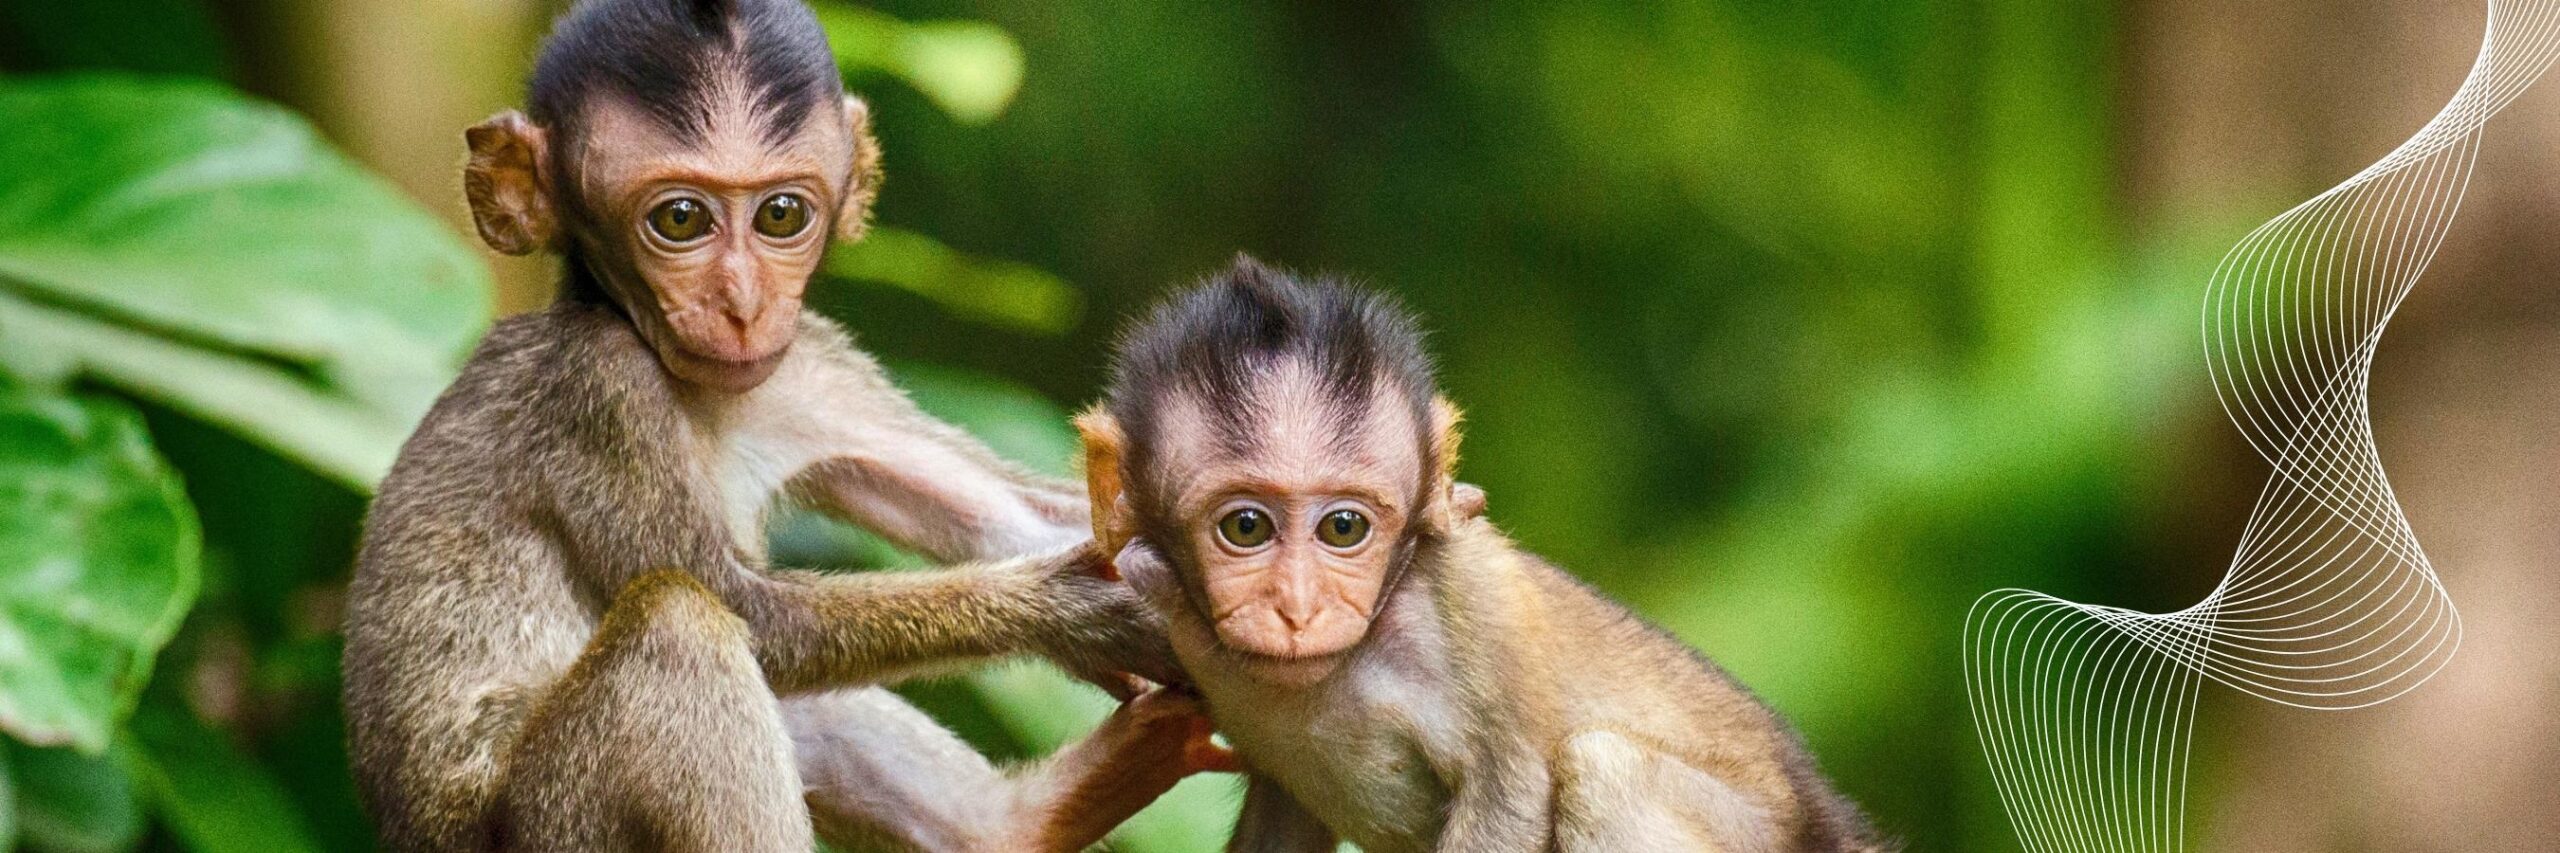 Ecuador monkey